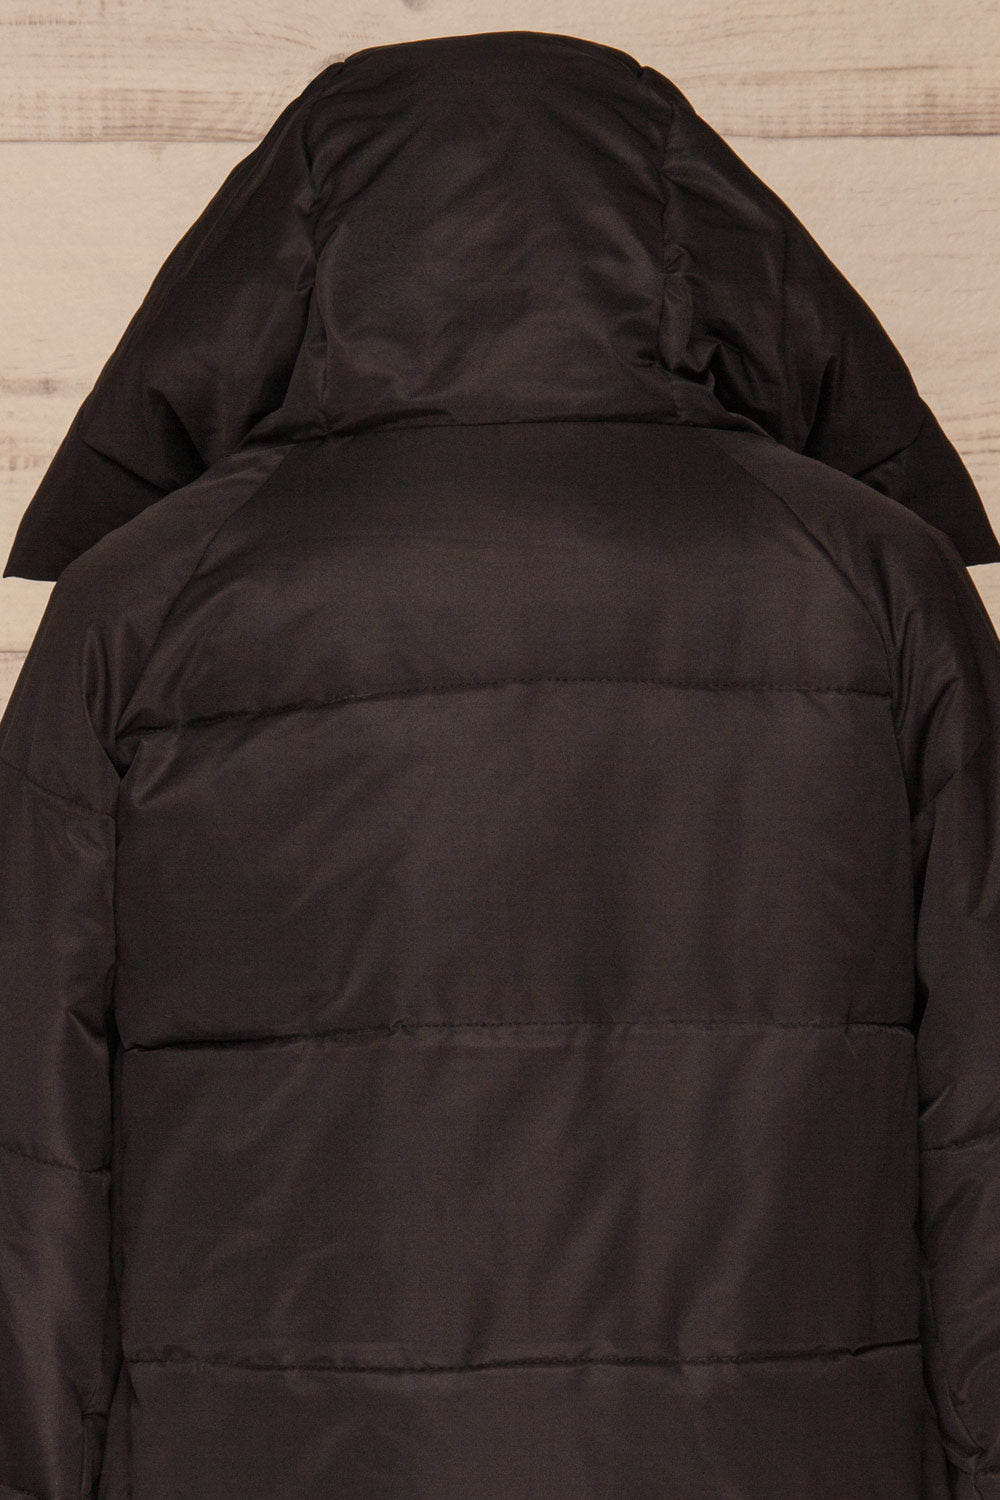 Huddersfield Black Short Quilted Coat with Hood | La Petite Garçonne back close-up hood 